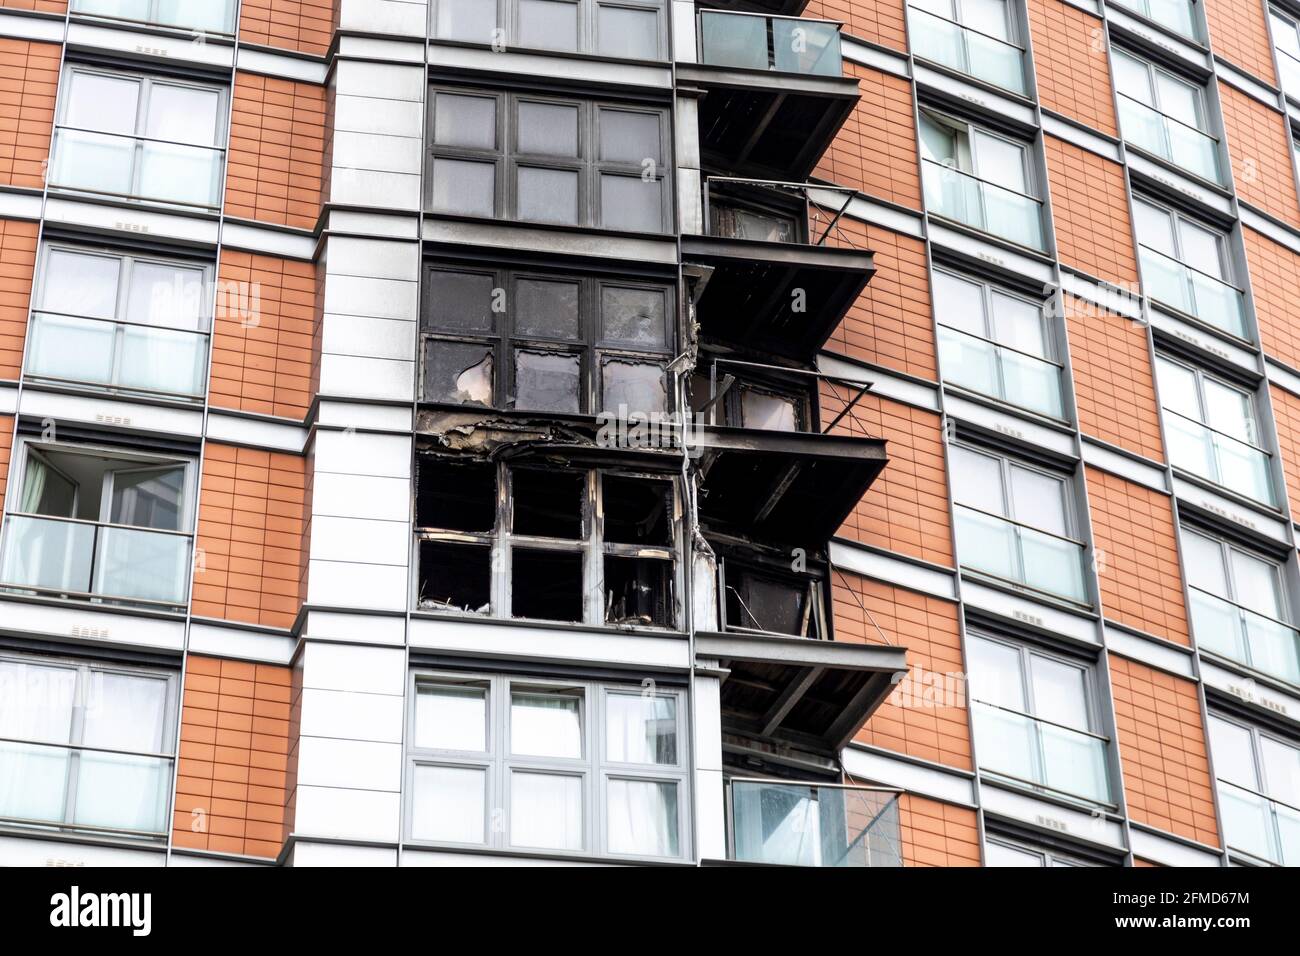 8. Mai 2021, London, Großbritannien - Fassade der New Providence Wharf nach einem Großbrand im Zusammenhang mit ACM-Verkleidungen (gleicher Typ wie bei der Katastrophe im Grenfell Tower), Poplar in der Nähe von Canary Wharf, gelöscht Stockfoto